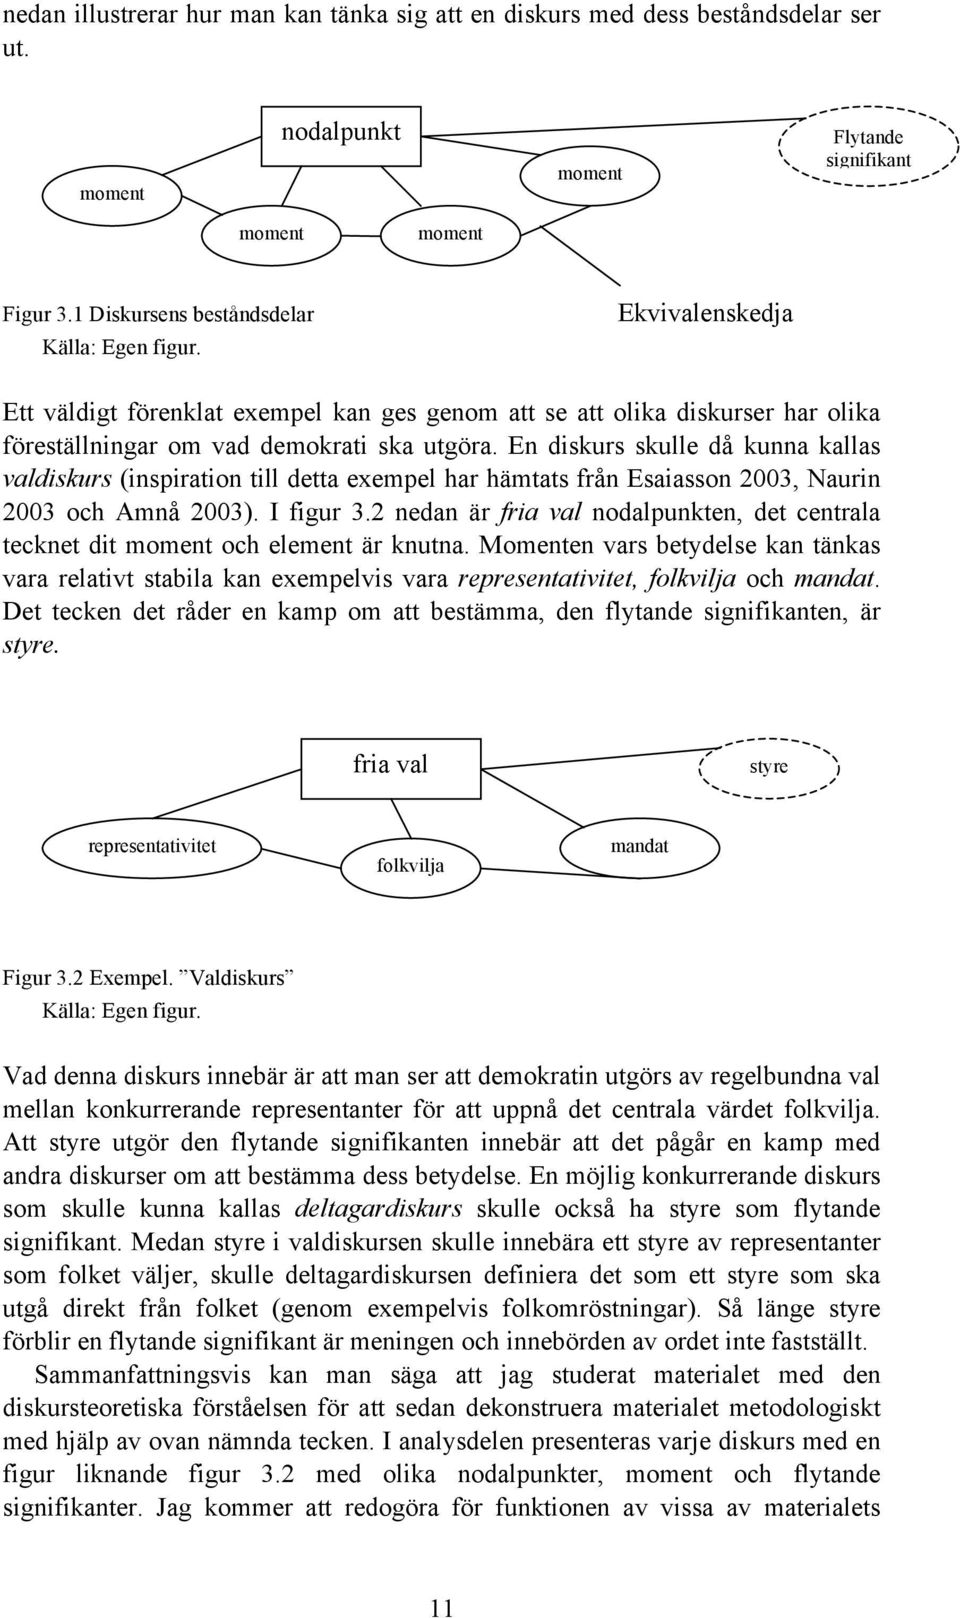 En diskurs skulle då kunna kallas valdiskurs (inspiration till detta exempel har hämtats från Esaiasson 2003, Naurin 2003 och Amnå 2003). I figur 3.